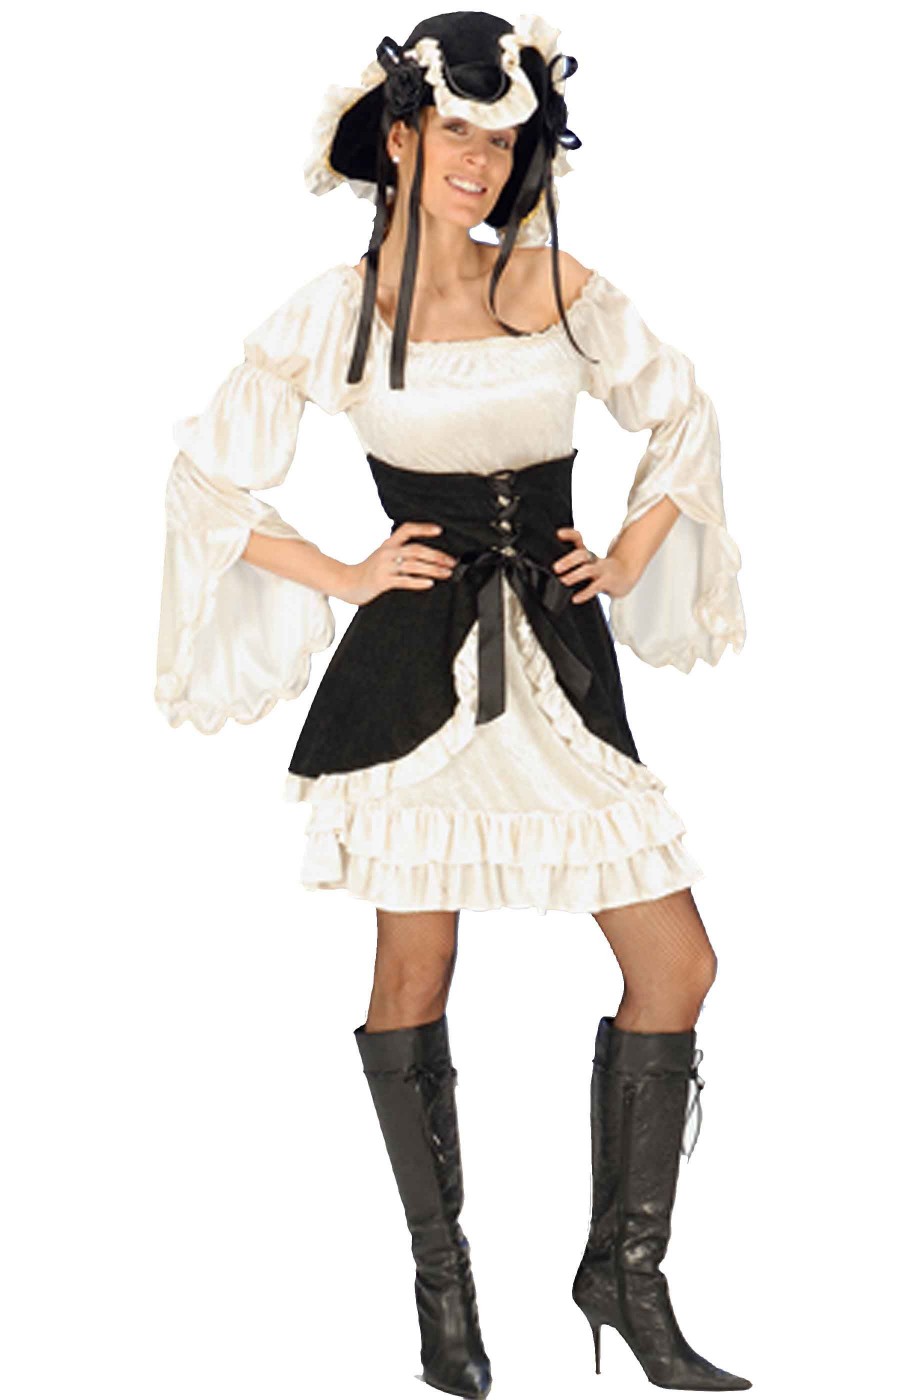 Costume da piratessa bianca e nera con corpetto